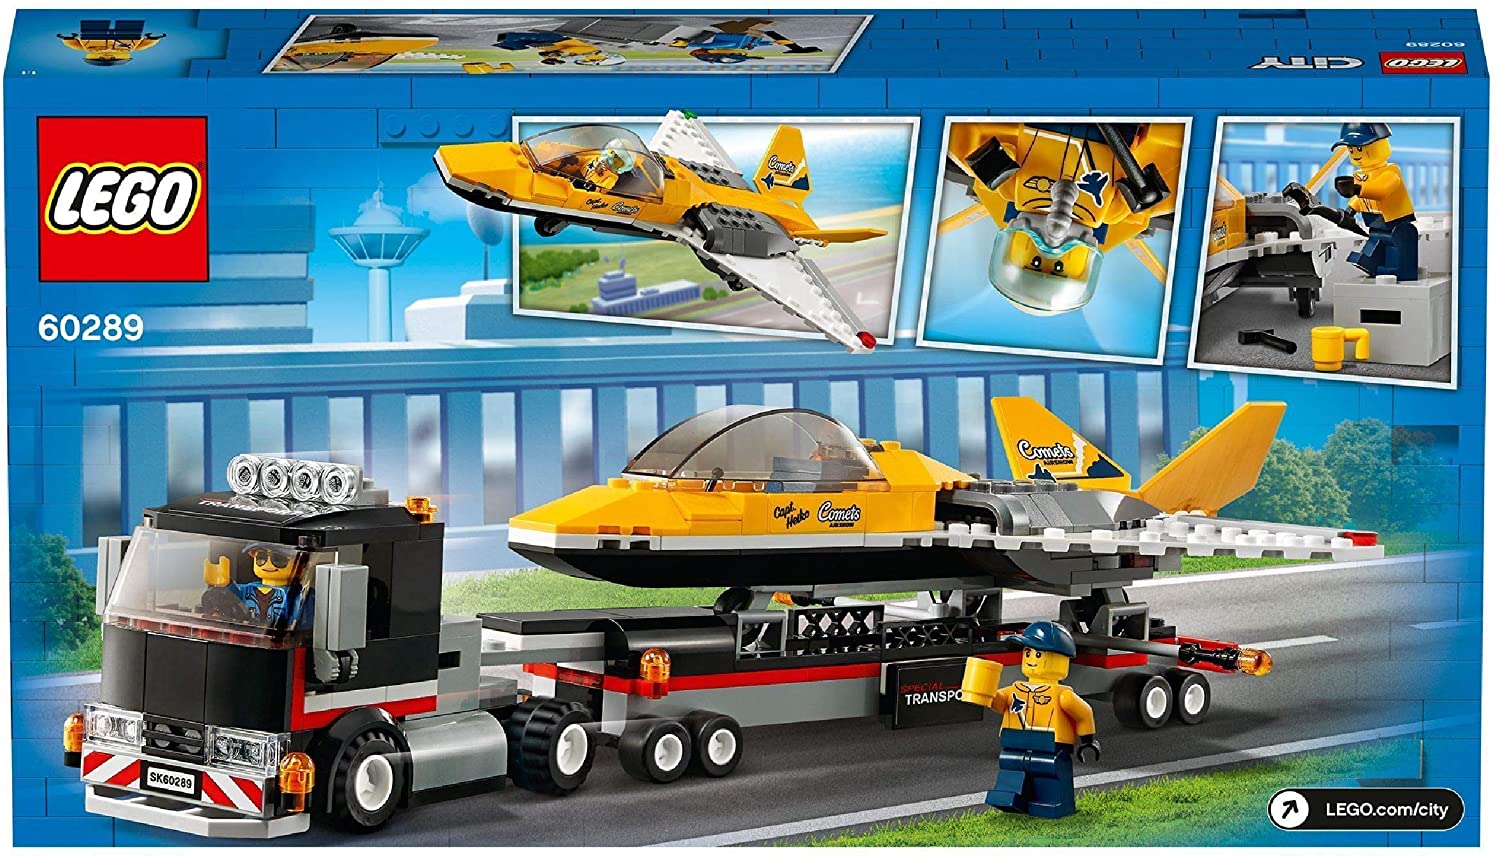 LEGO - City: Transportor de avion, 60289 | LEGO